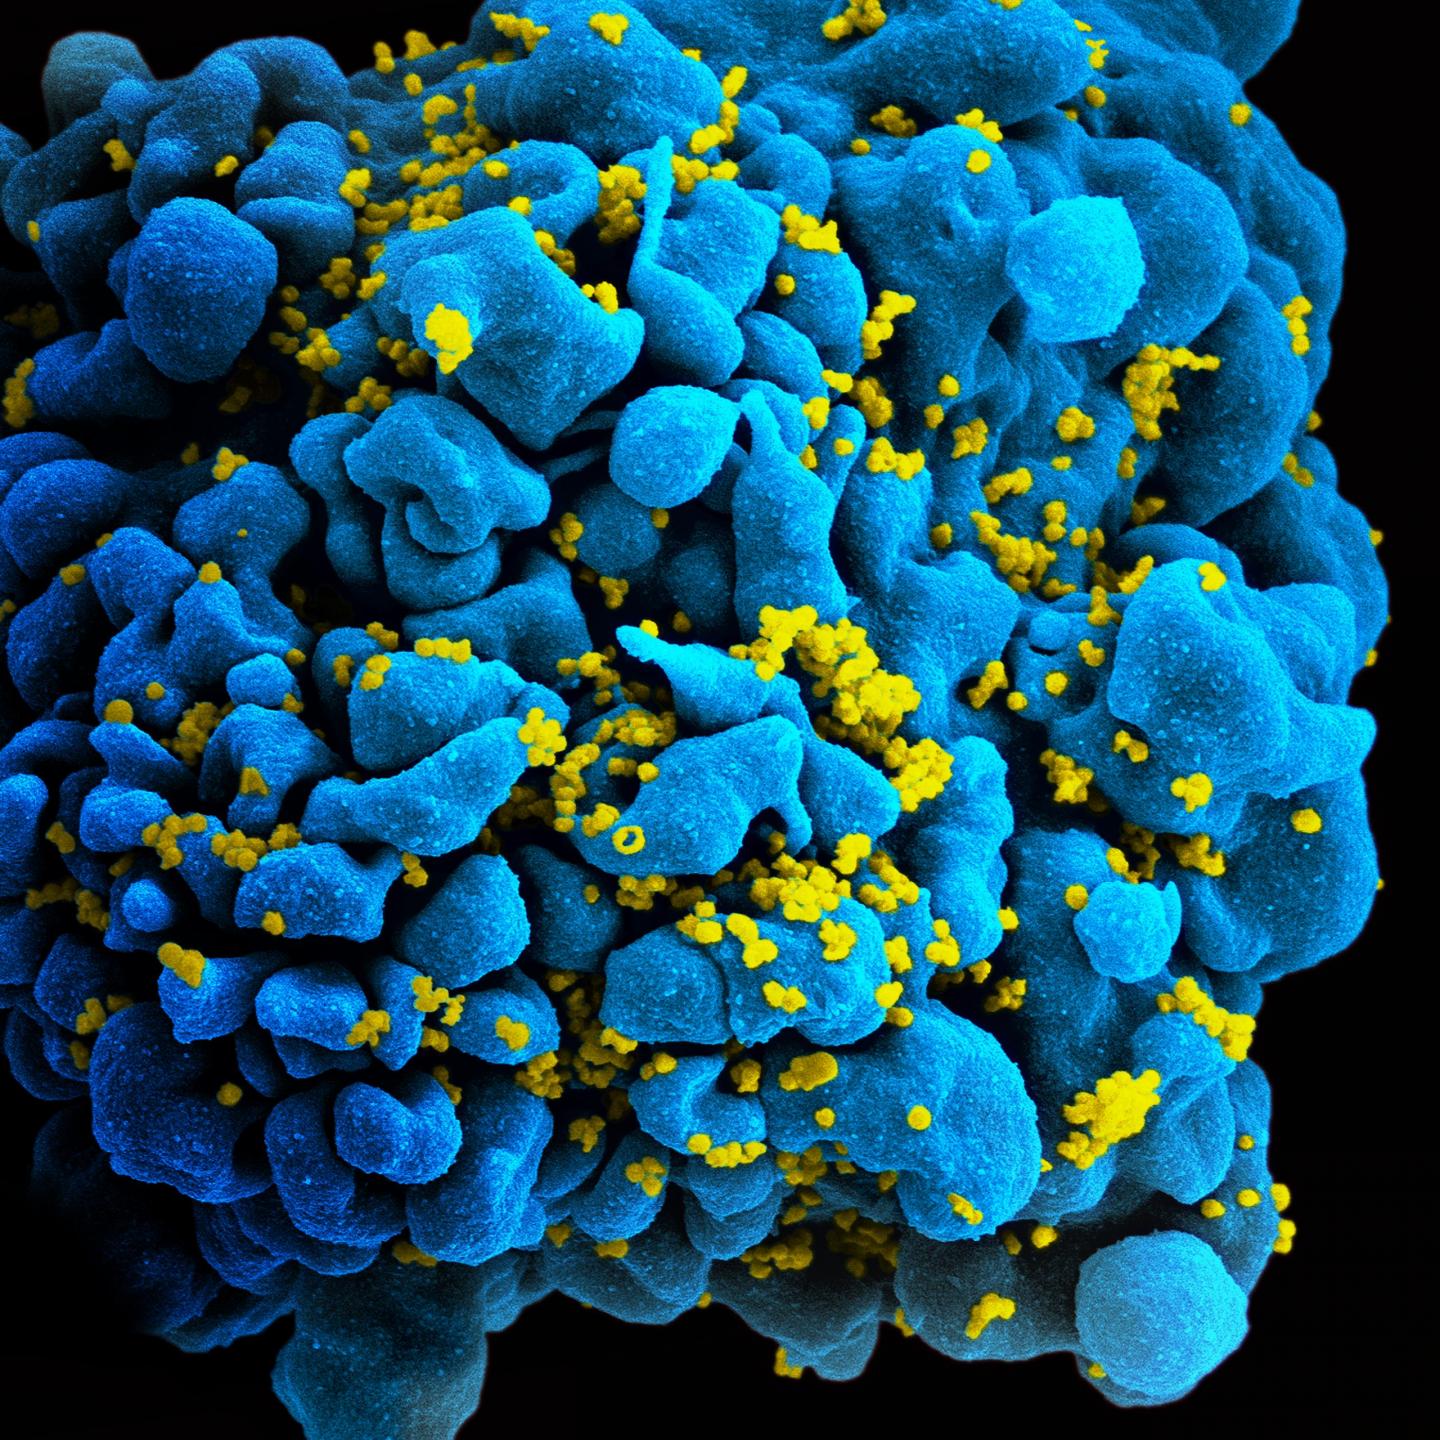 El virus del sida es como una lata herméticamente sellada. Fuente: NIAID. CC BY 2.0.